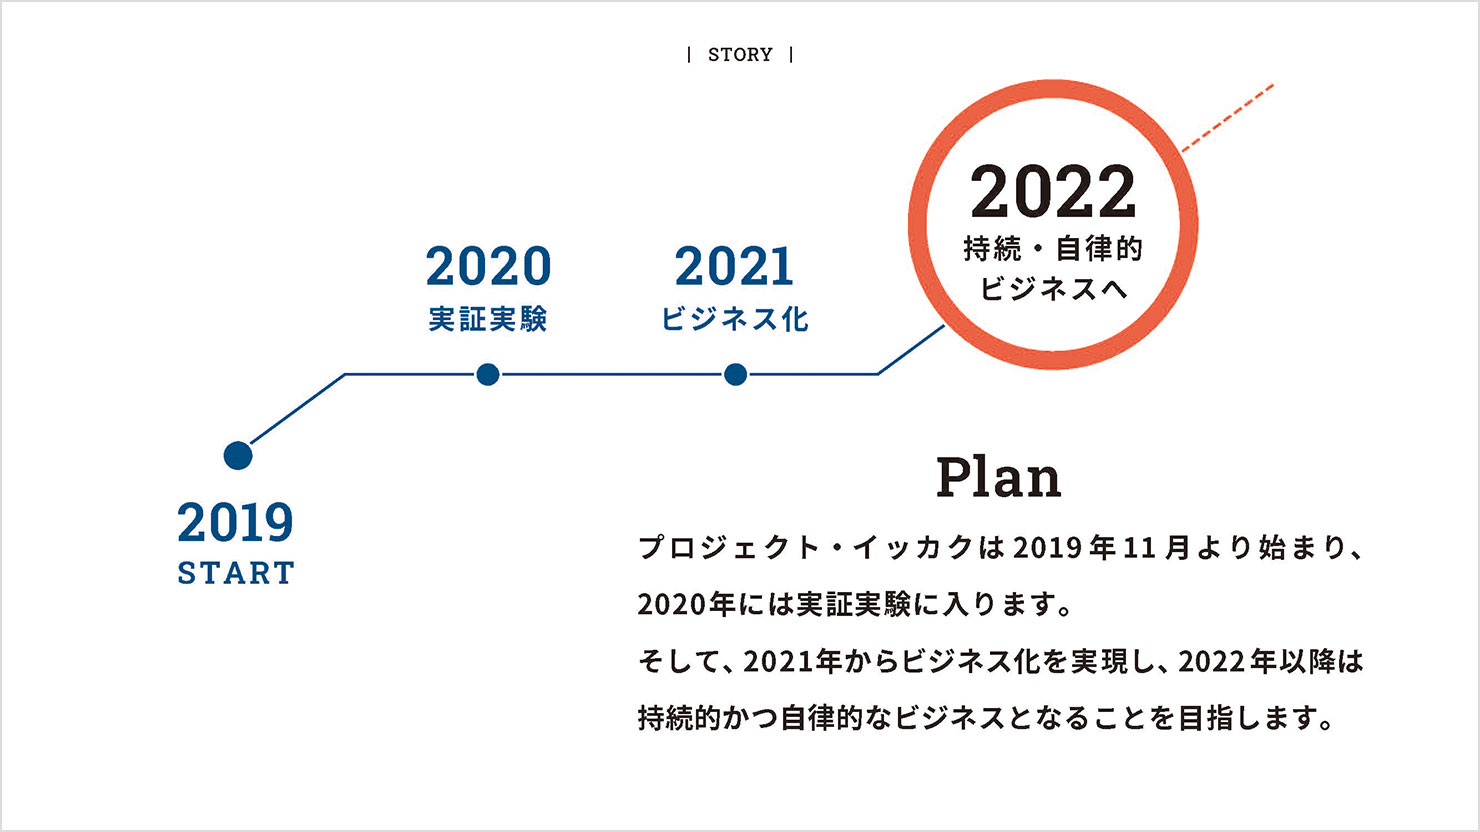 スライド：2019年から2022年に向けてのプロジェクトプランの説明。余白を広めに取って見やすく、またマイルストーンである2022年が一番目立つように高コントラストな大きい文字で強調している。